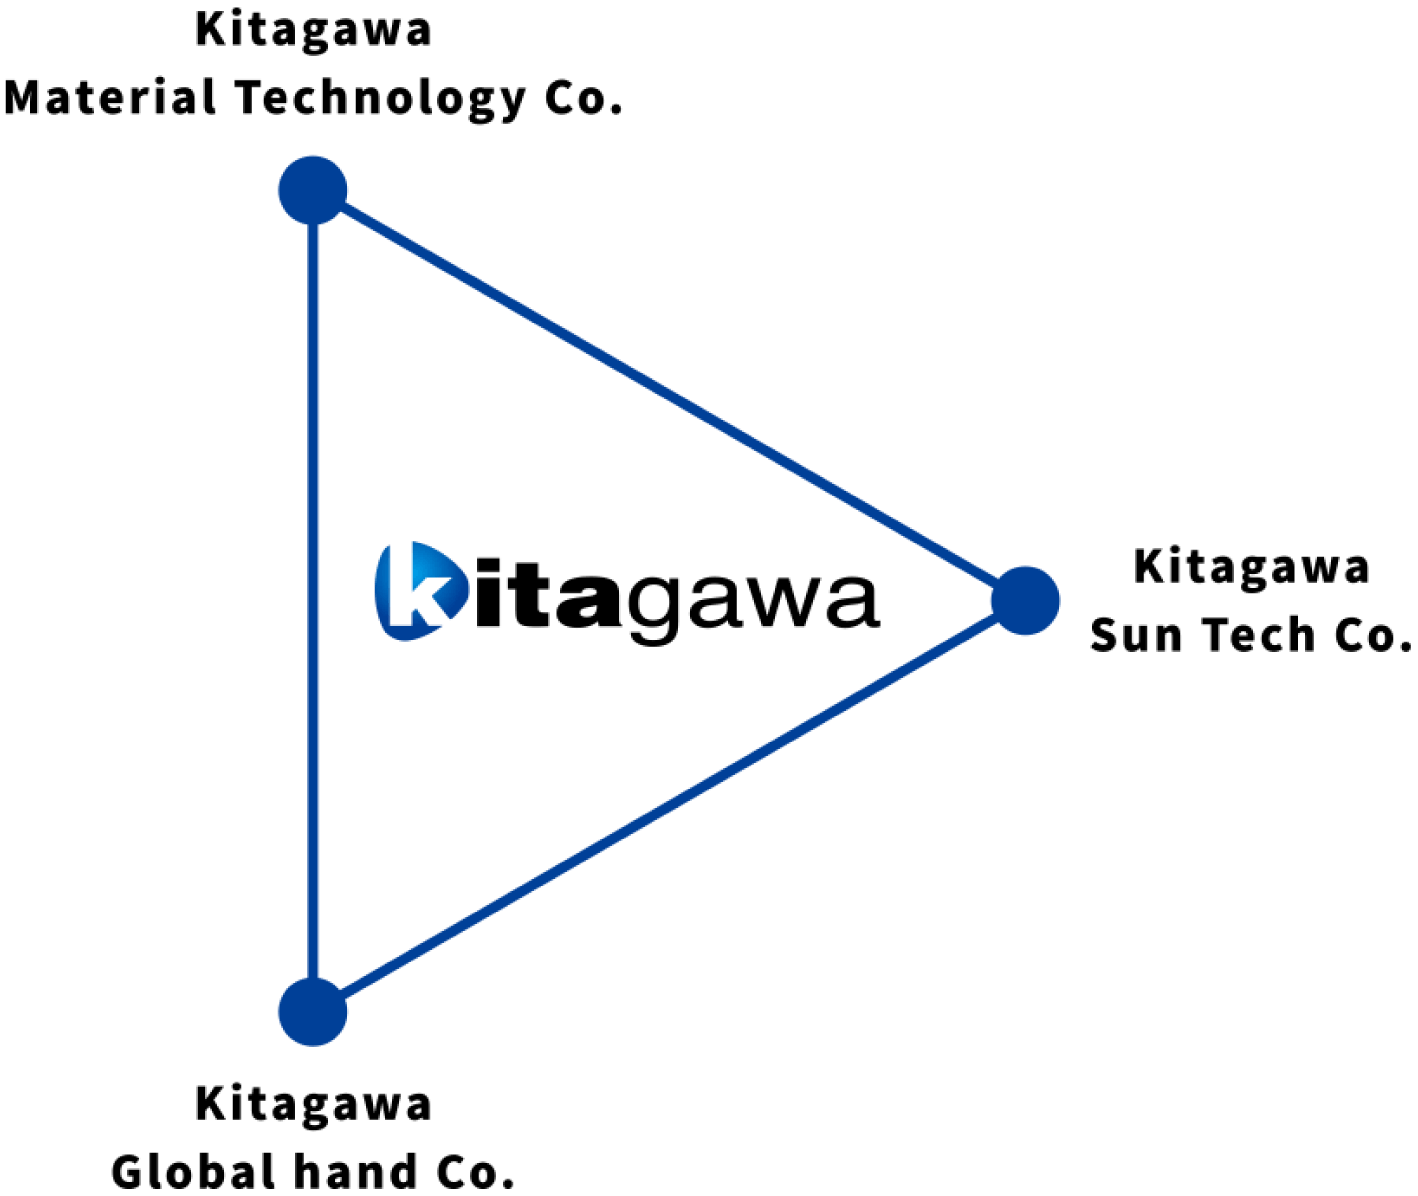 キタガワの事業基盤